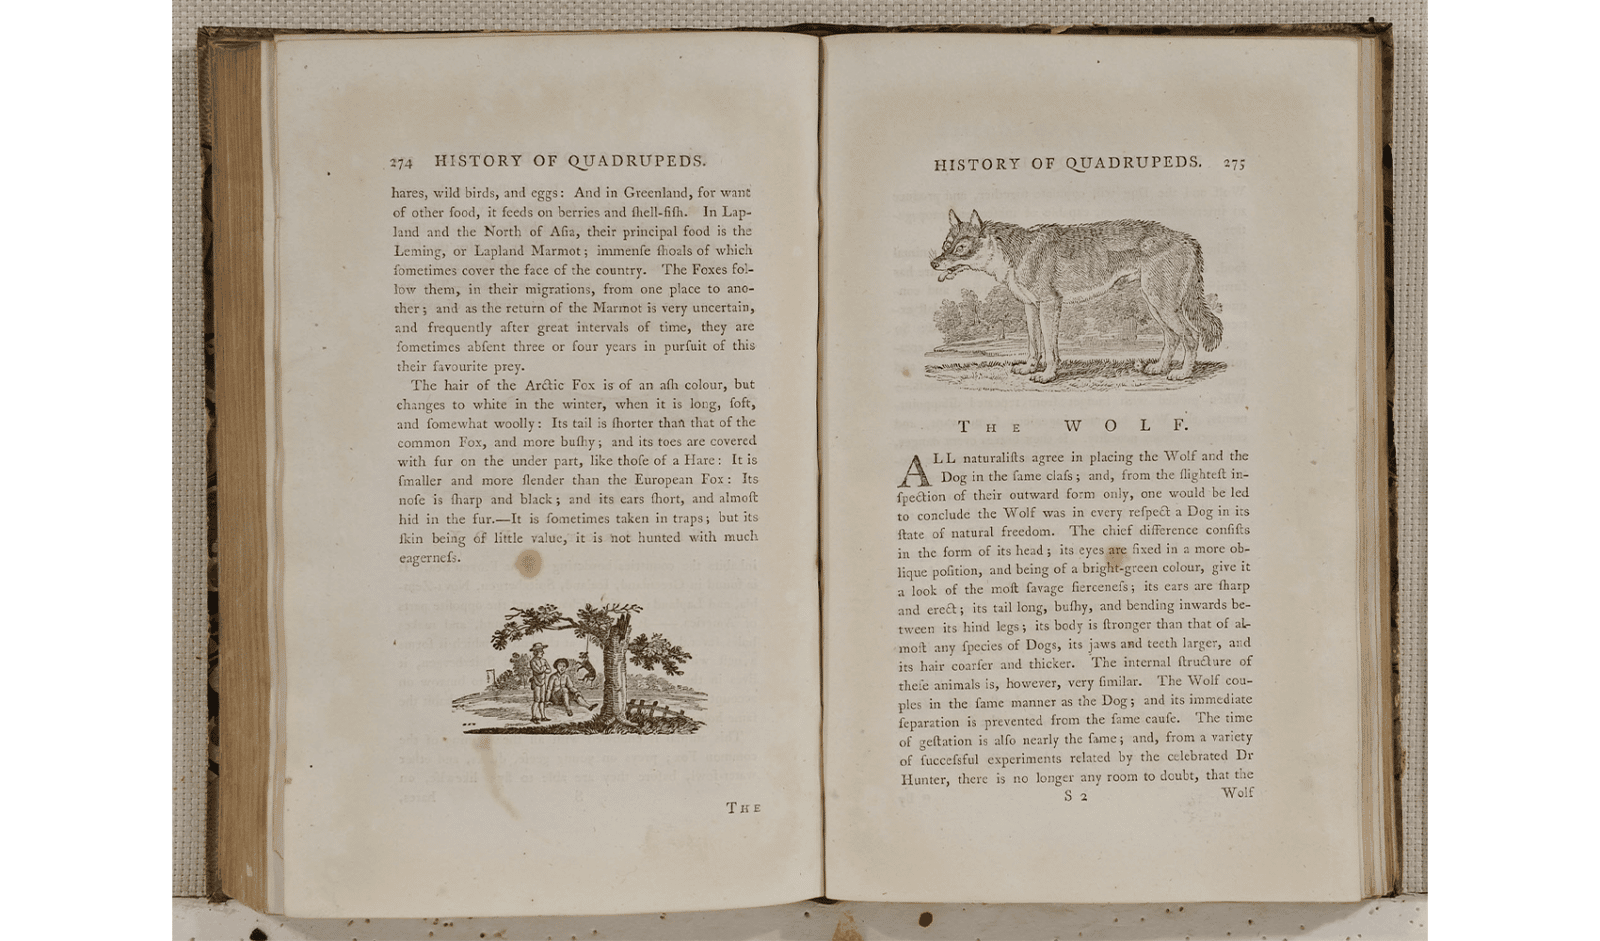 トマス・ビューイック画『四足獣概説』（1790年刊、町田市立国際版画美術館蔵）。18世紀後半に登場した木口木版（こぐちもくはん）は、硬い木に彫ることで、精緻な線描を可能にしたイギリス固有の技術。博物学的な図版により爆発的な流行のキッカケに。